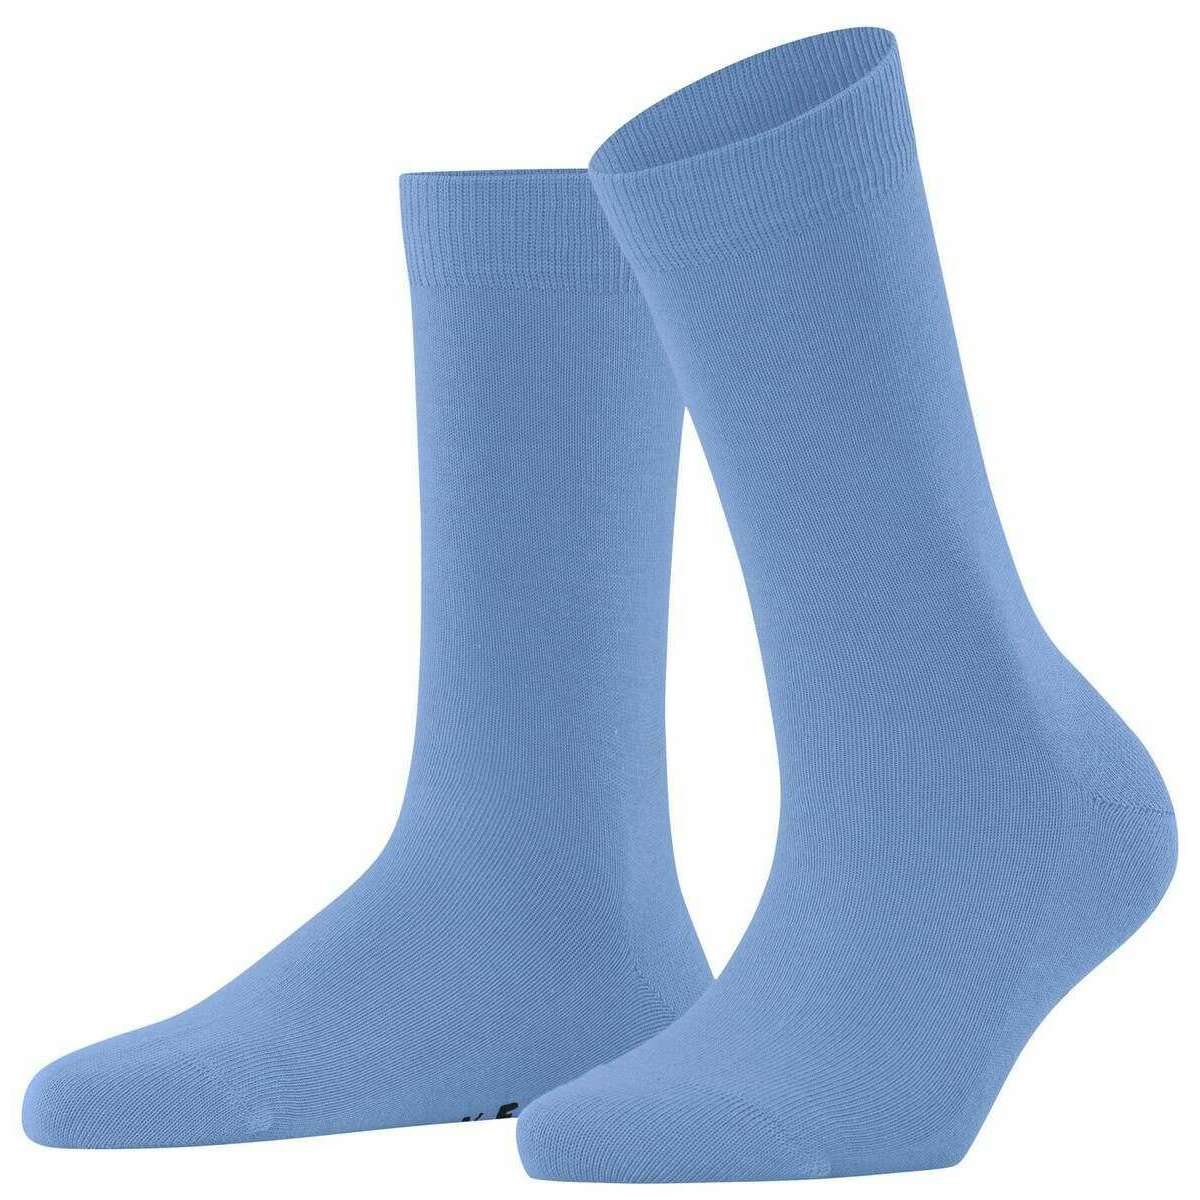 Falke Family Socks - Arctic Blue